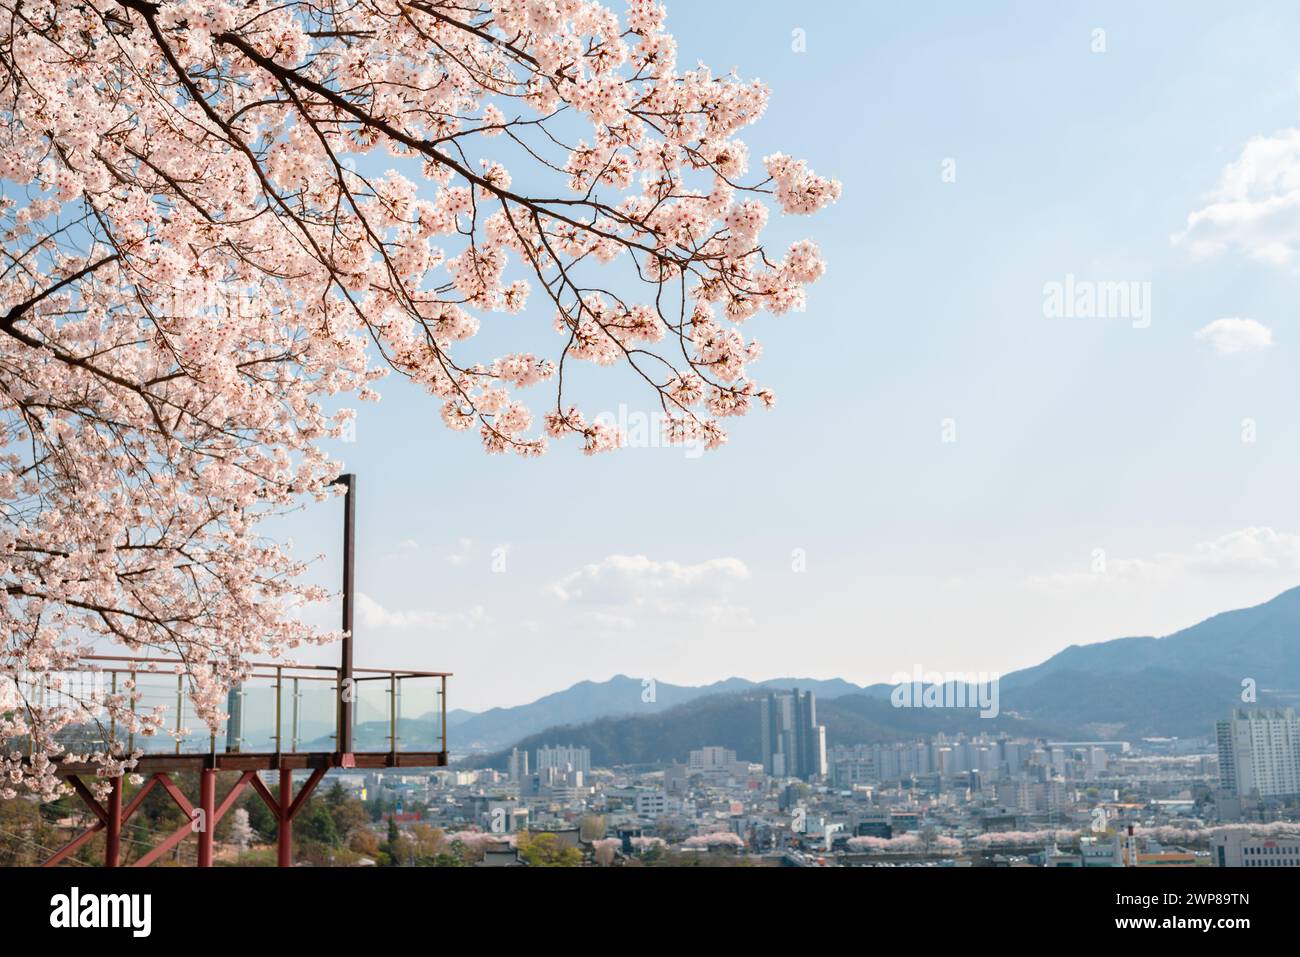 Vista della città di Miryang dall'osservatorio al chiaro di luna del parco Ssamji in primavera a Miryang, Corea Foto Stock